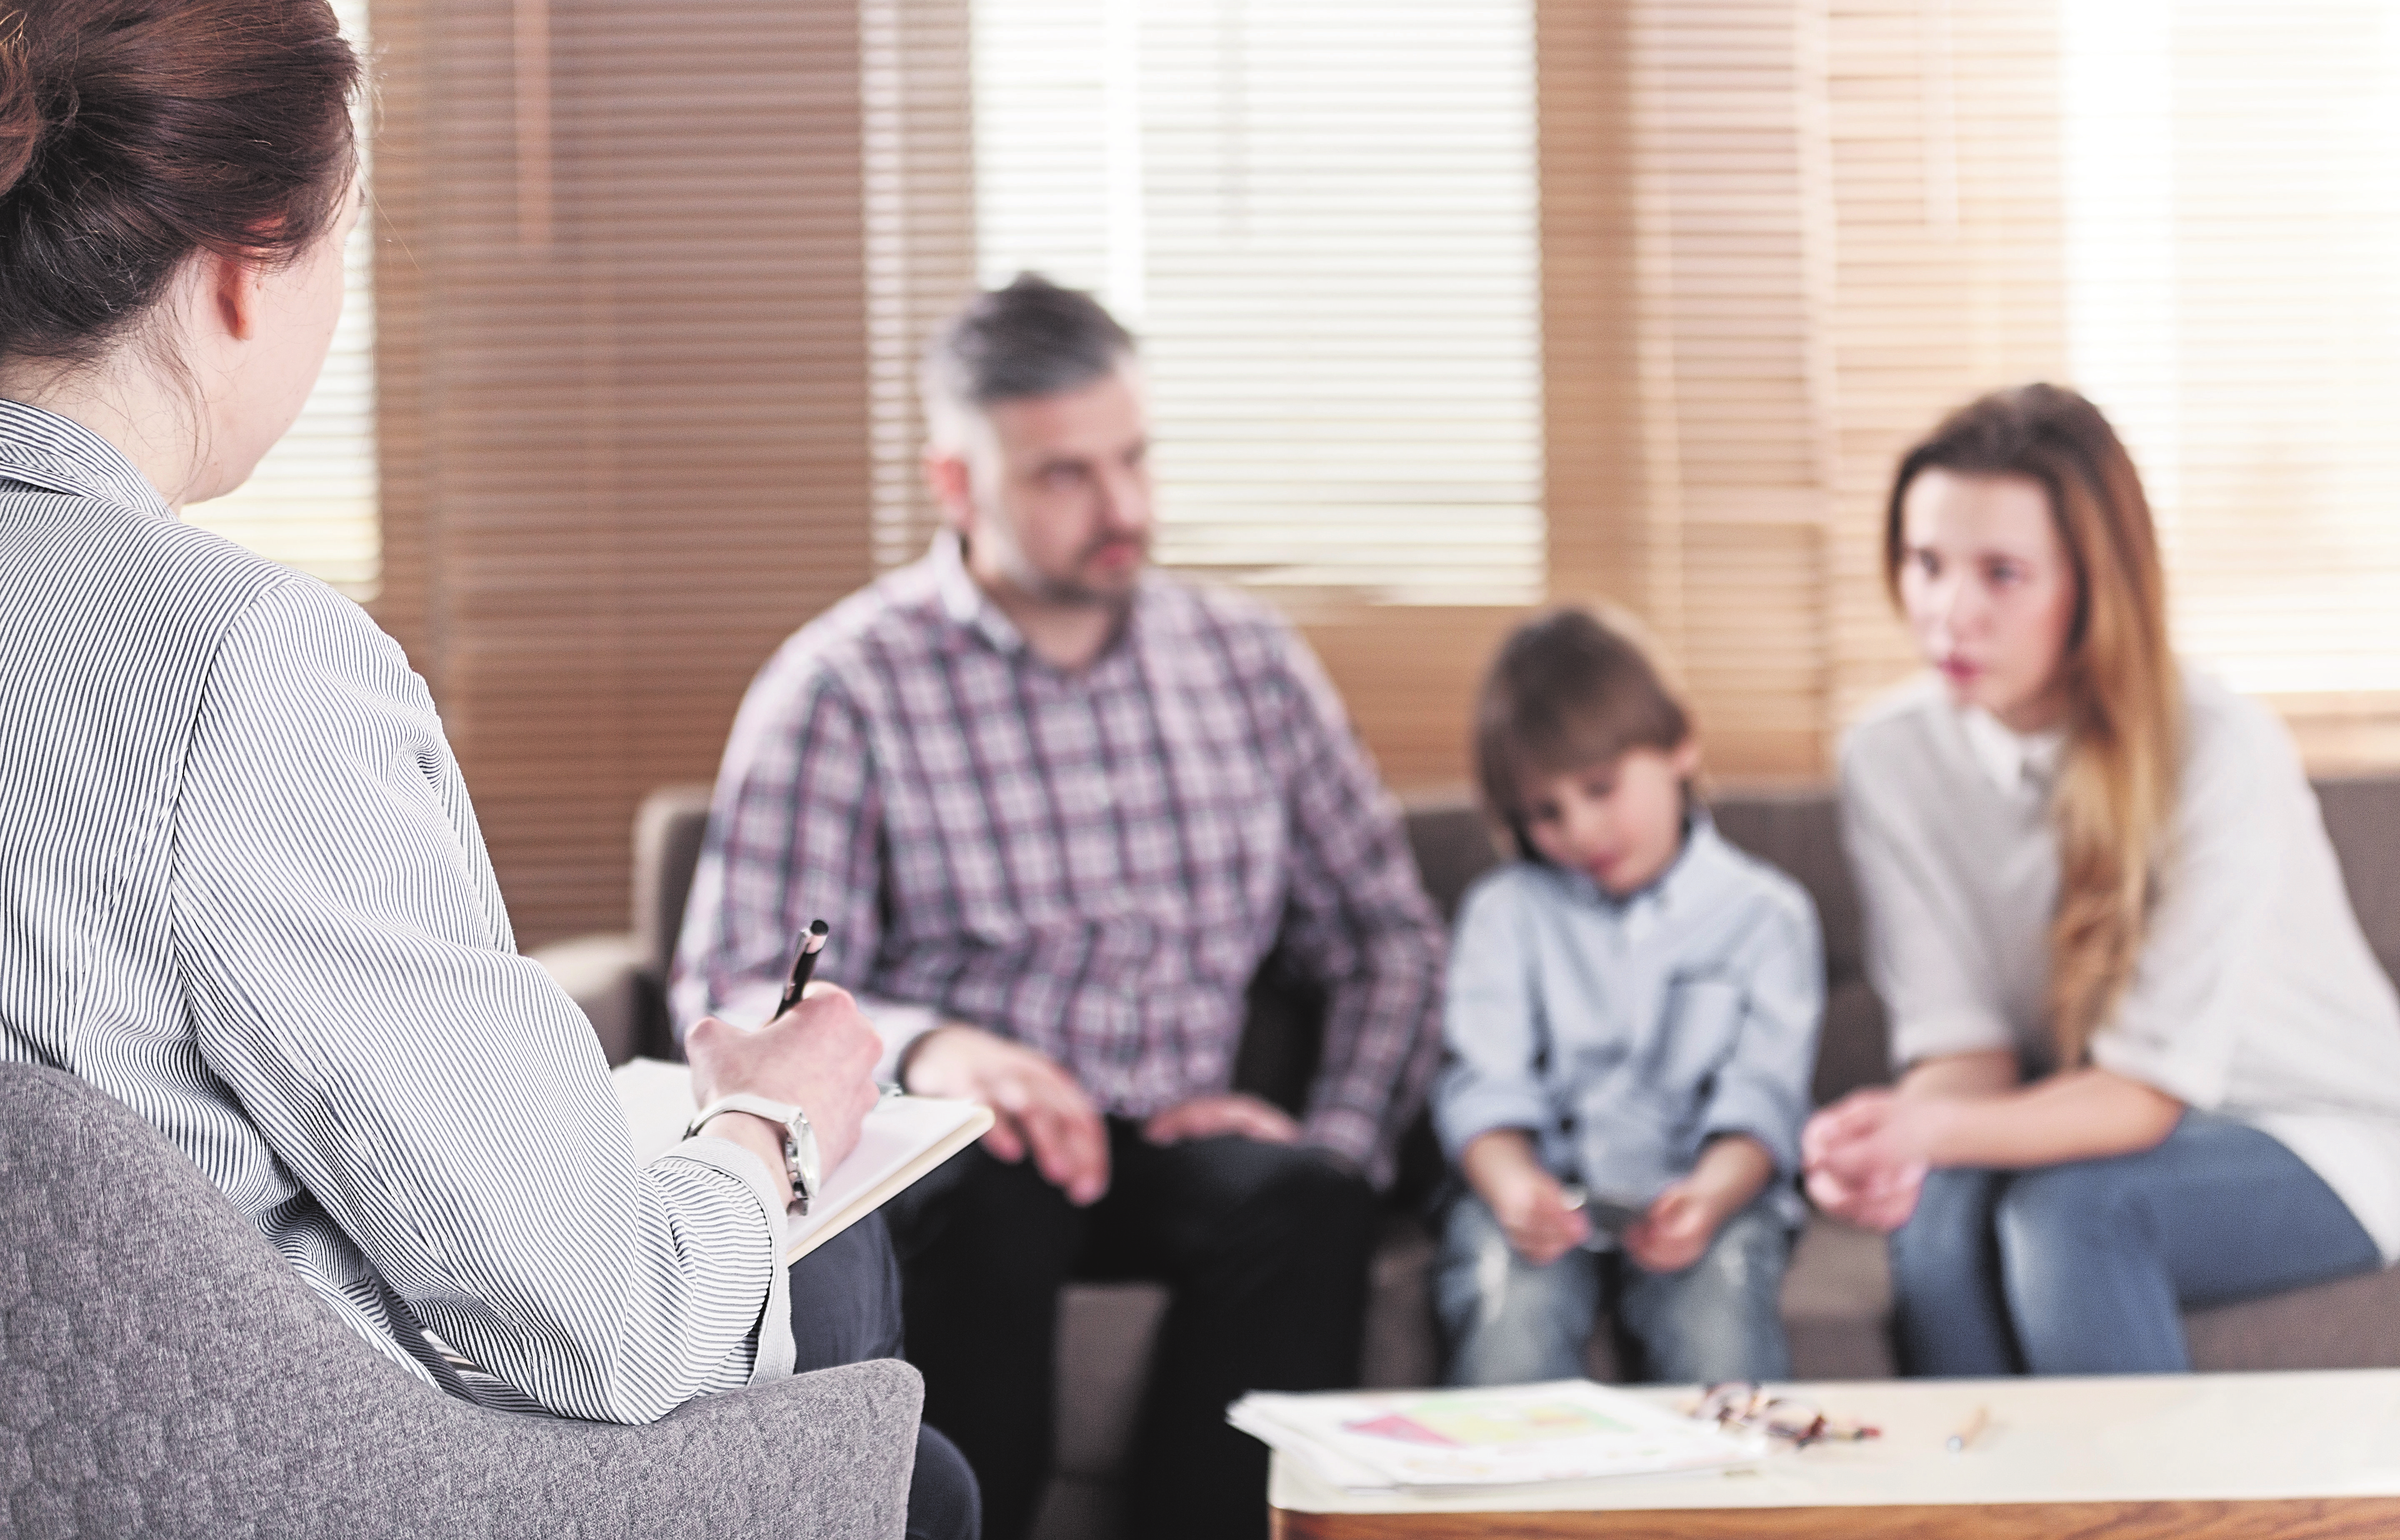 Kinder trauem anders als Erwachsene. Gemeinsame Gespräche können dabei helfen, den Verlust zu verarbeiten. Fotos: Shutterstock